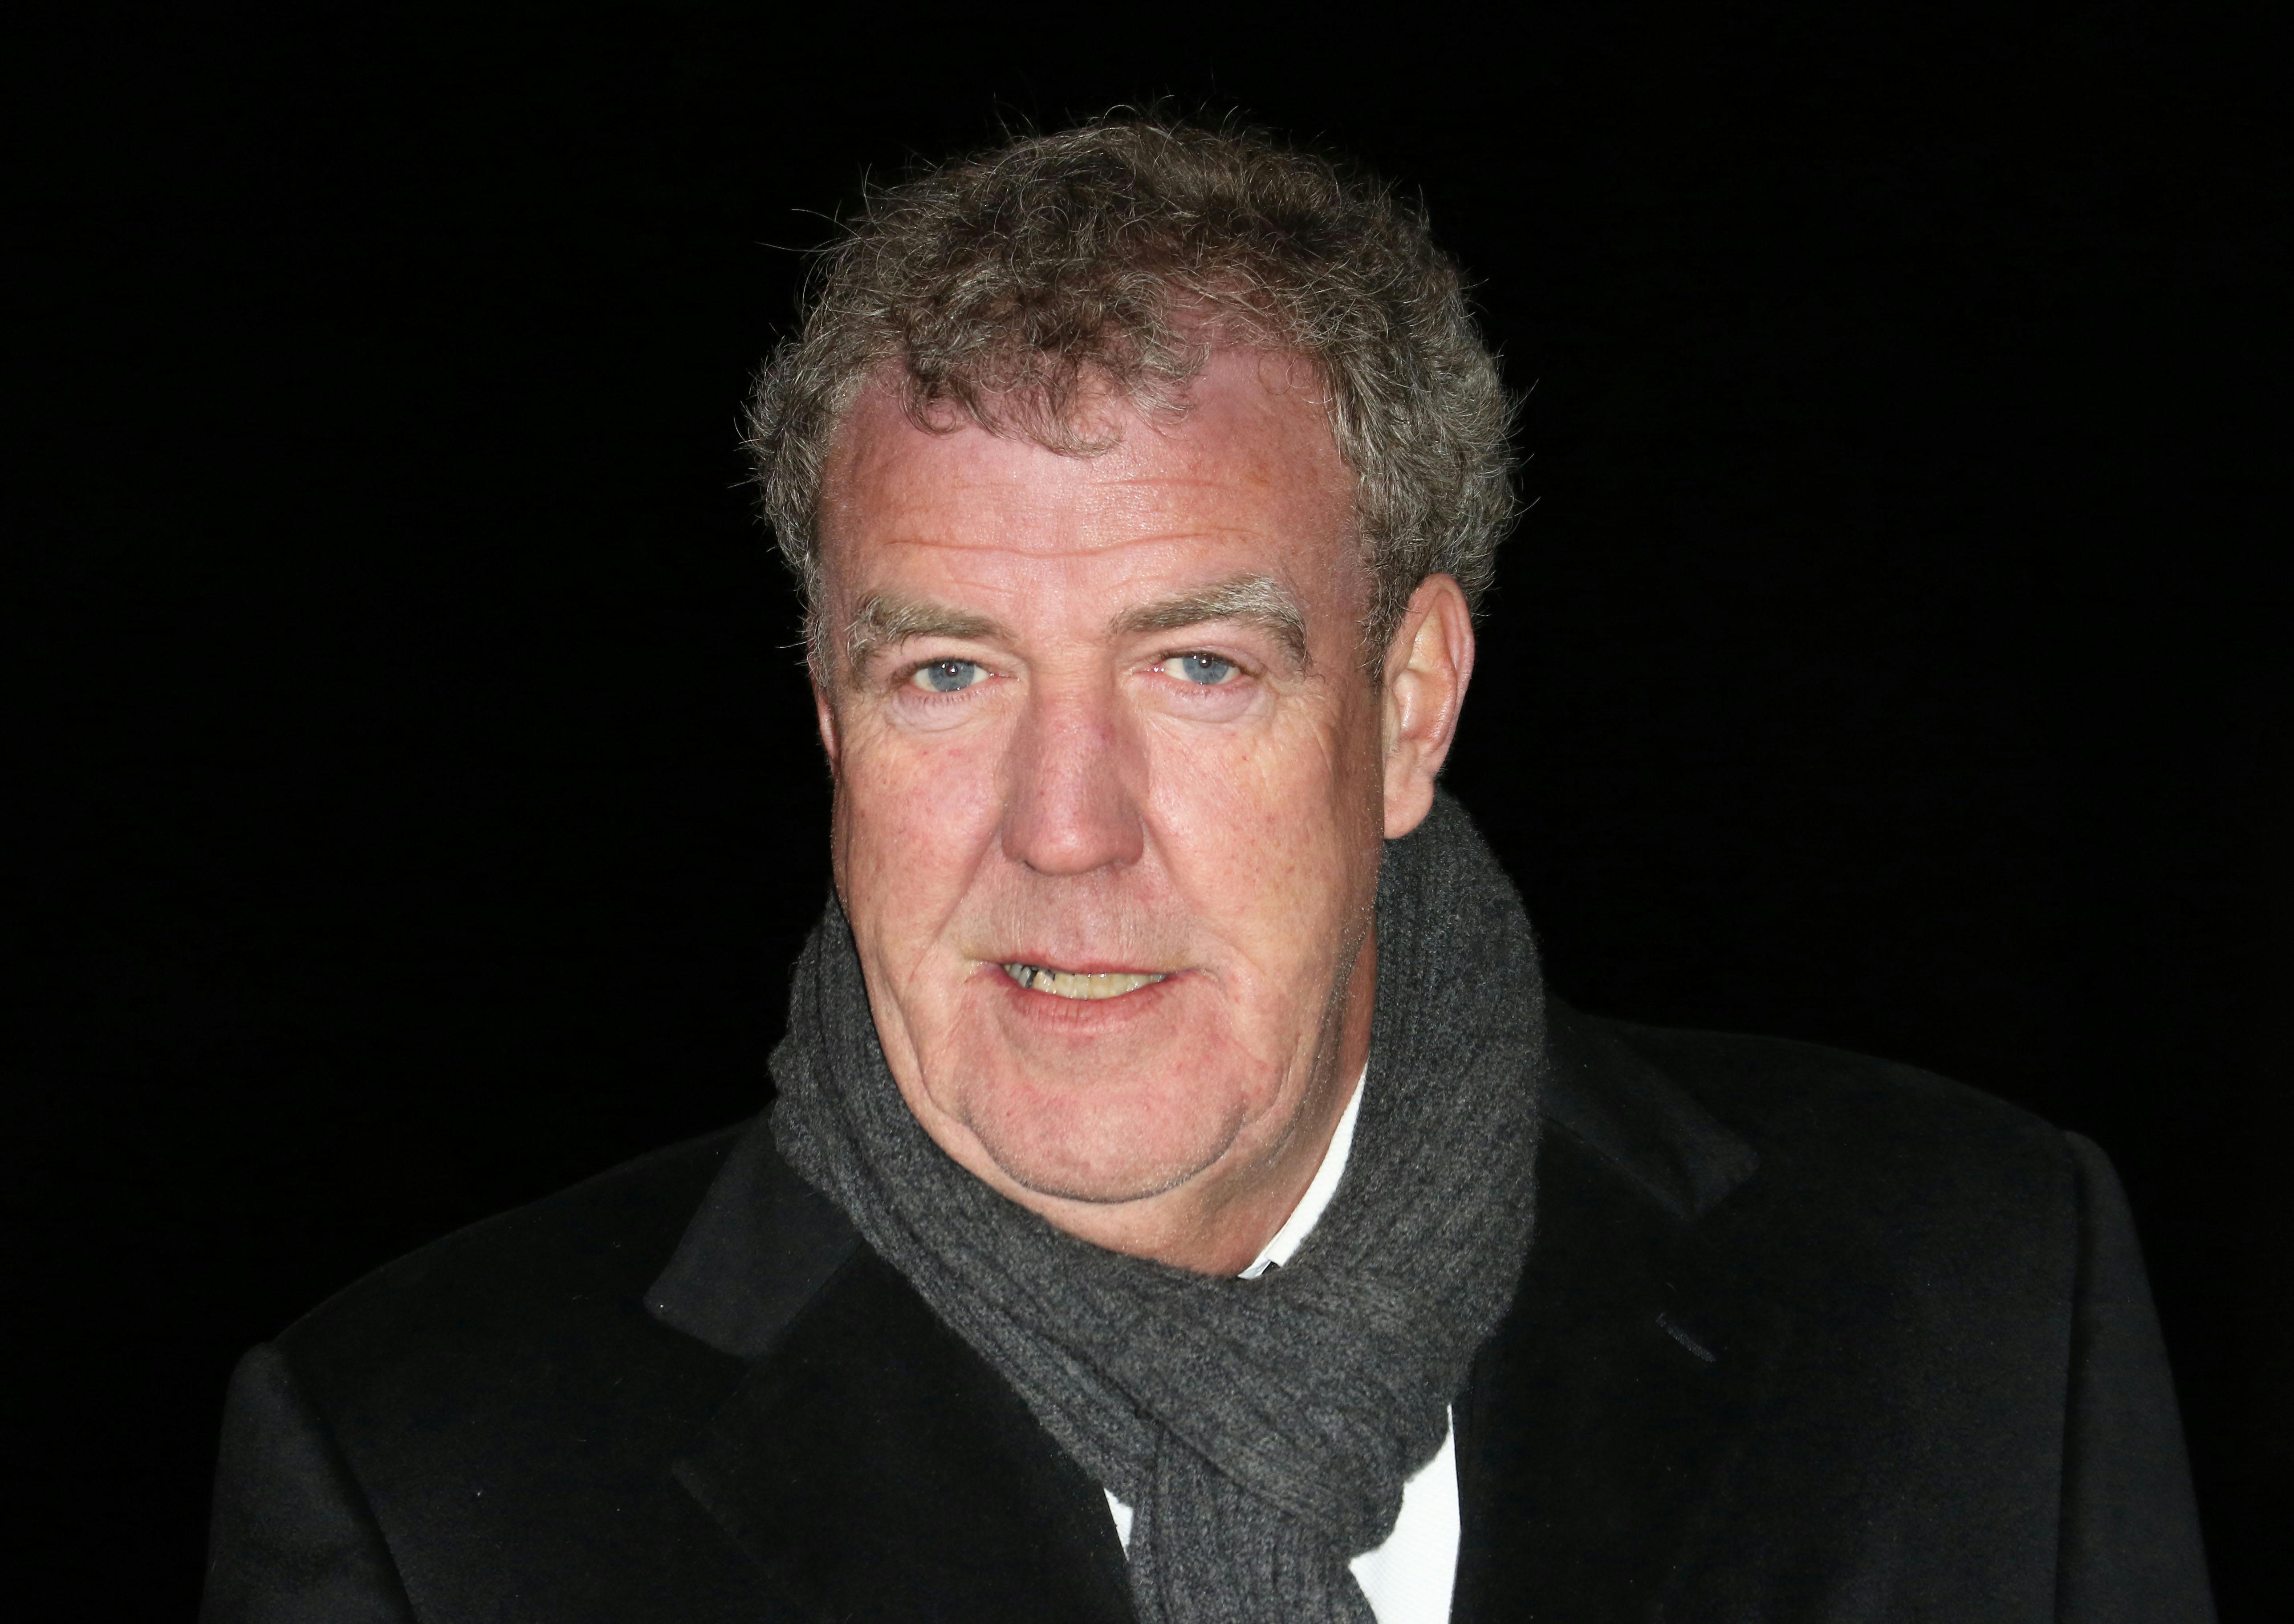 Jeremy Clarkson er blevet suspenderet, efter at han angiveligt har været i slagsmål med en producer under optagelserne af Top Gear.